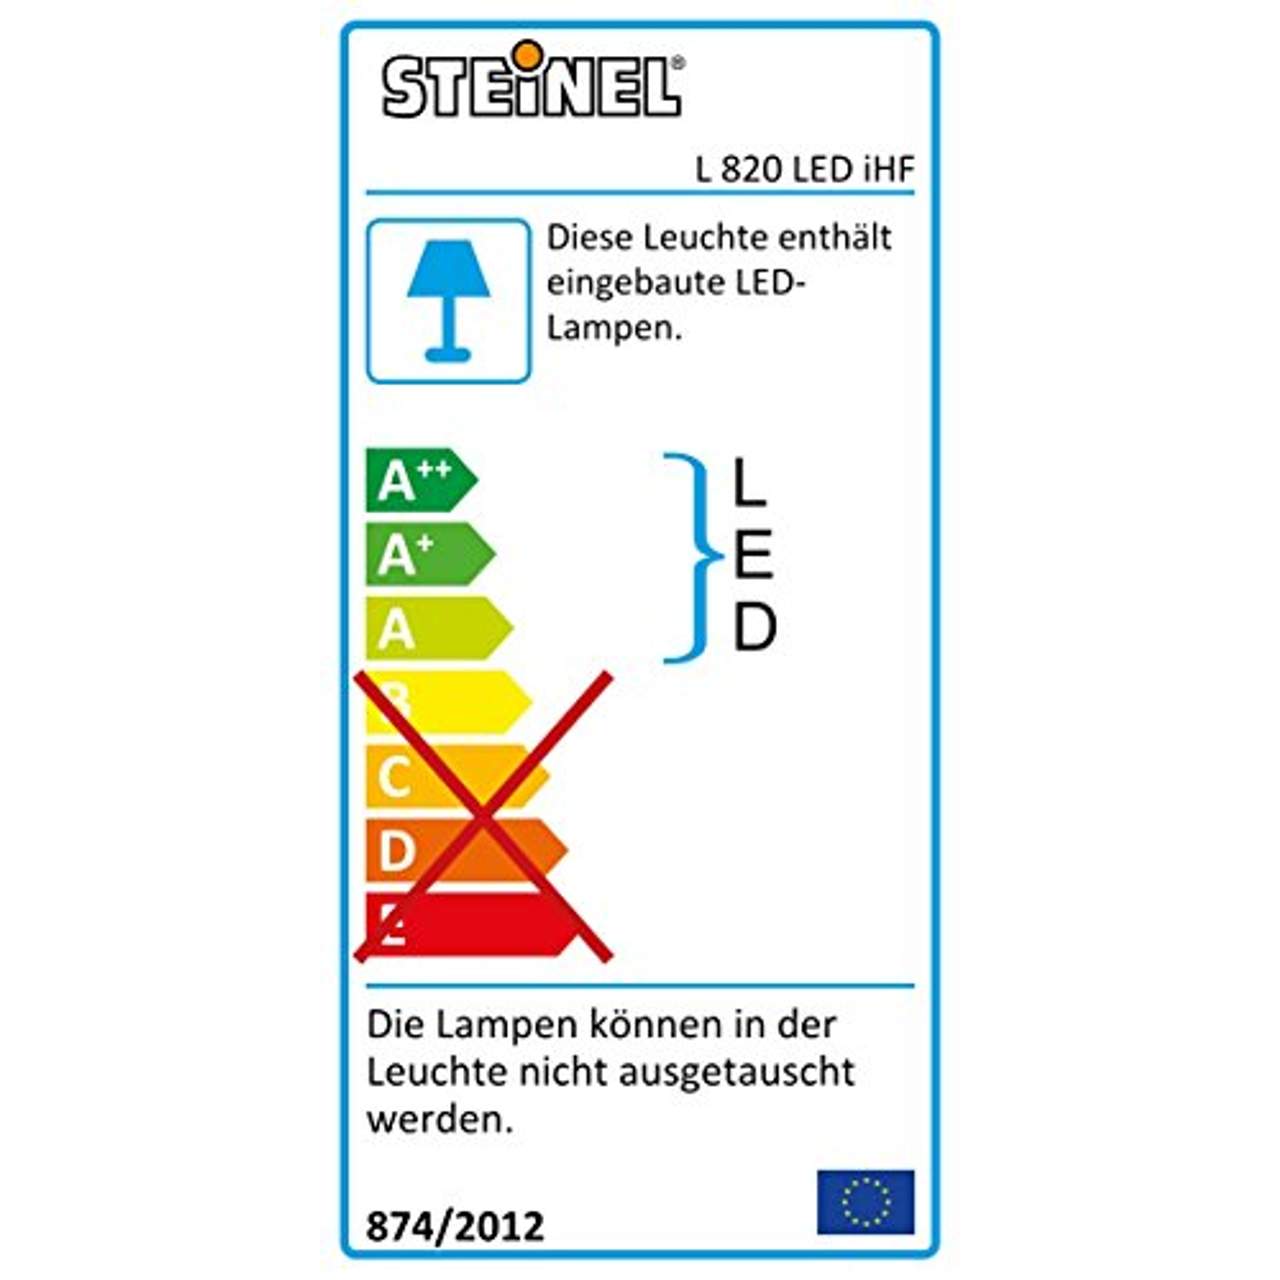 Steinel LED Hausnummernleuchte L 820 LED anthrazit